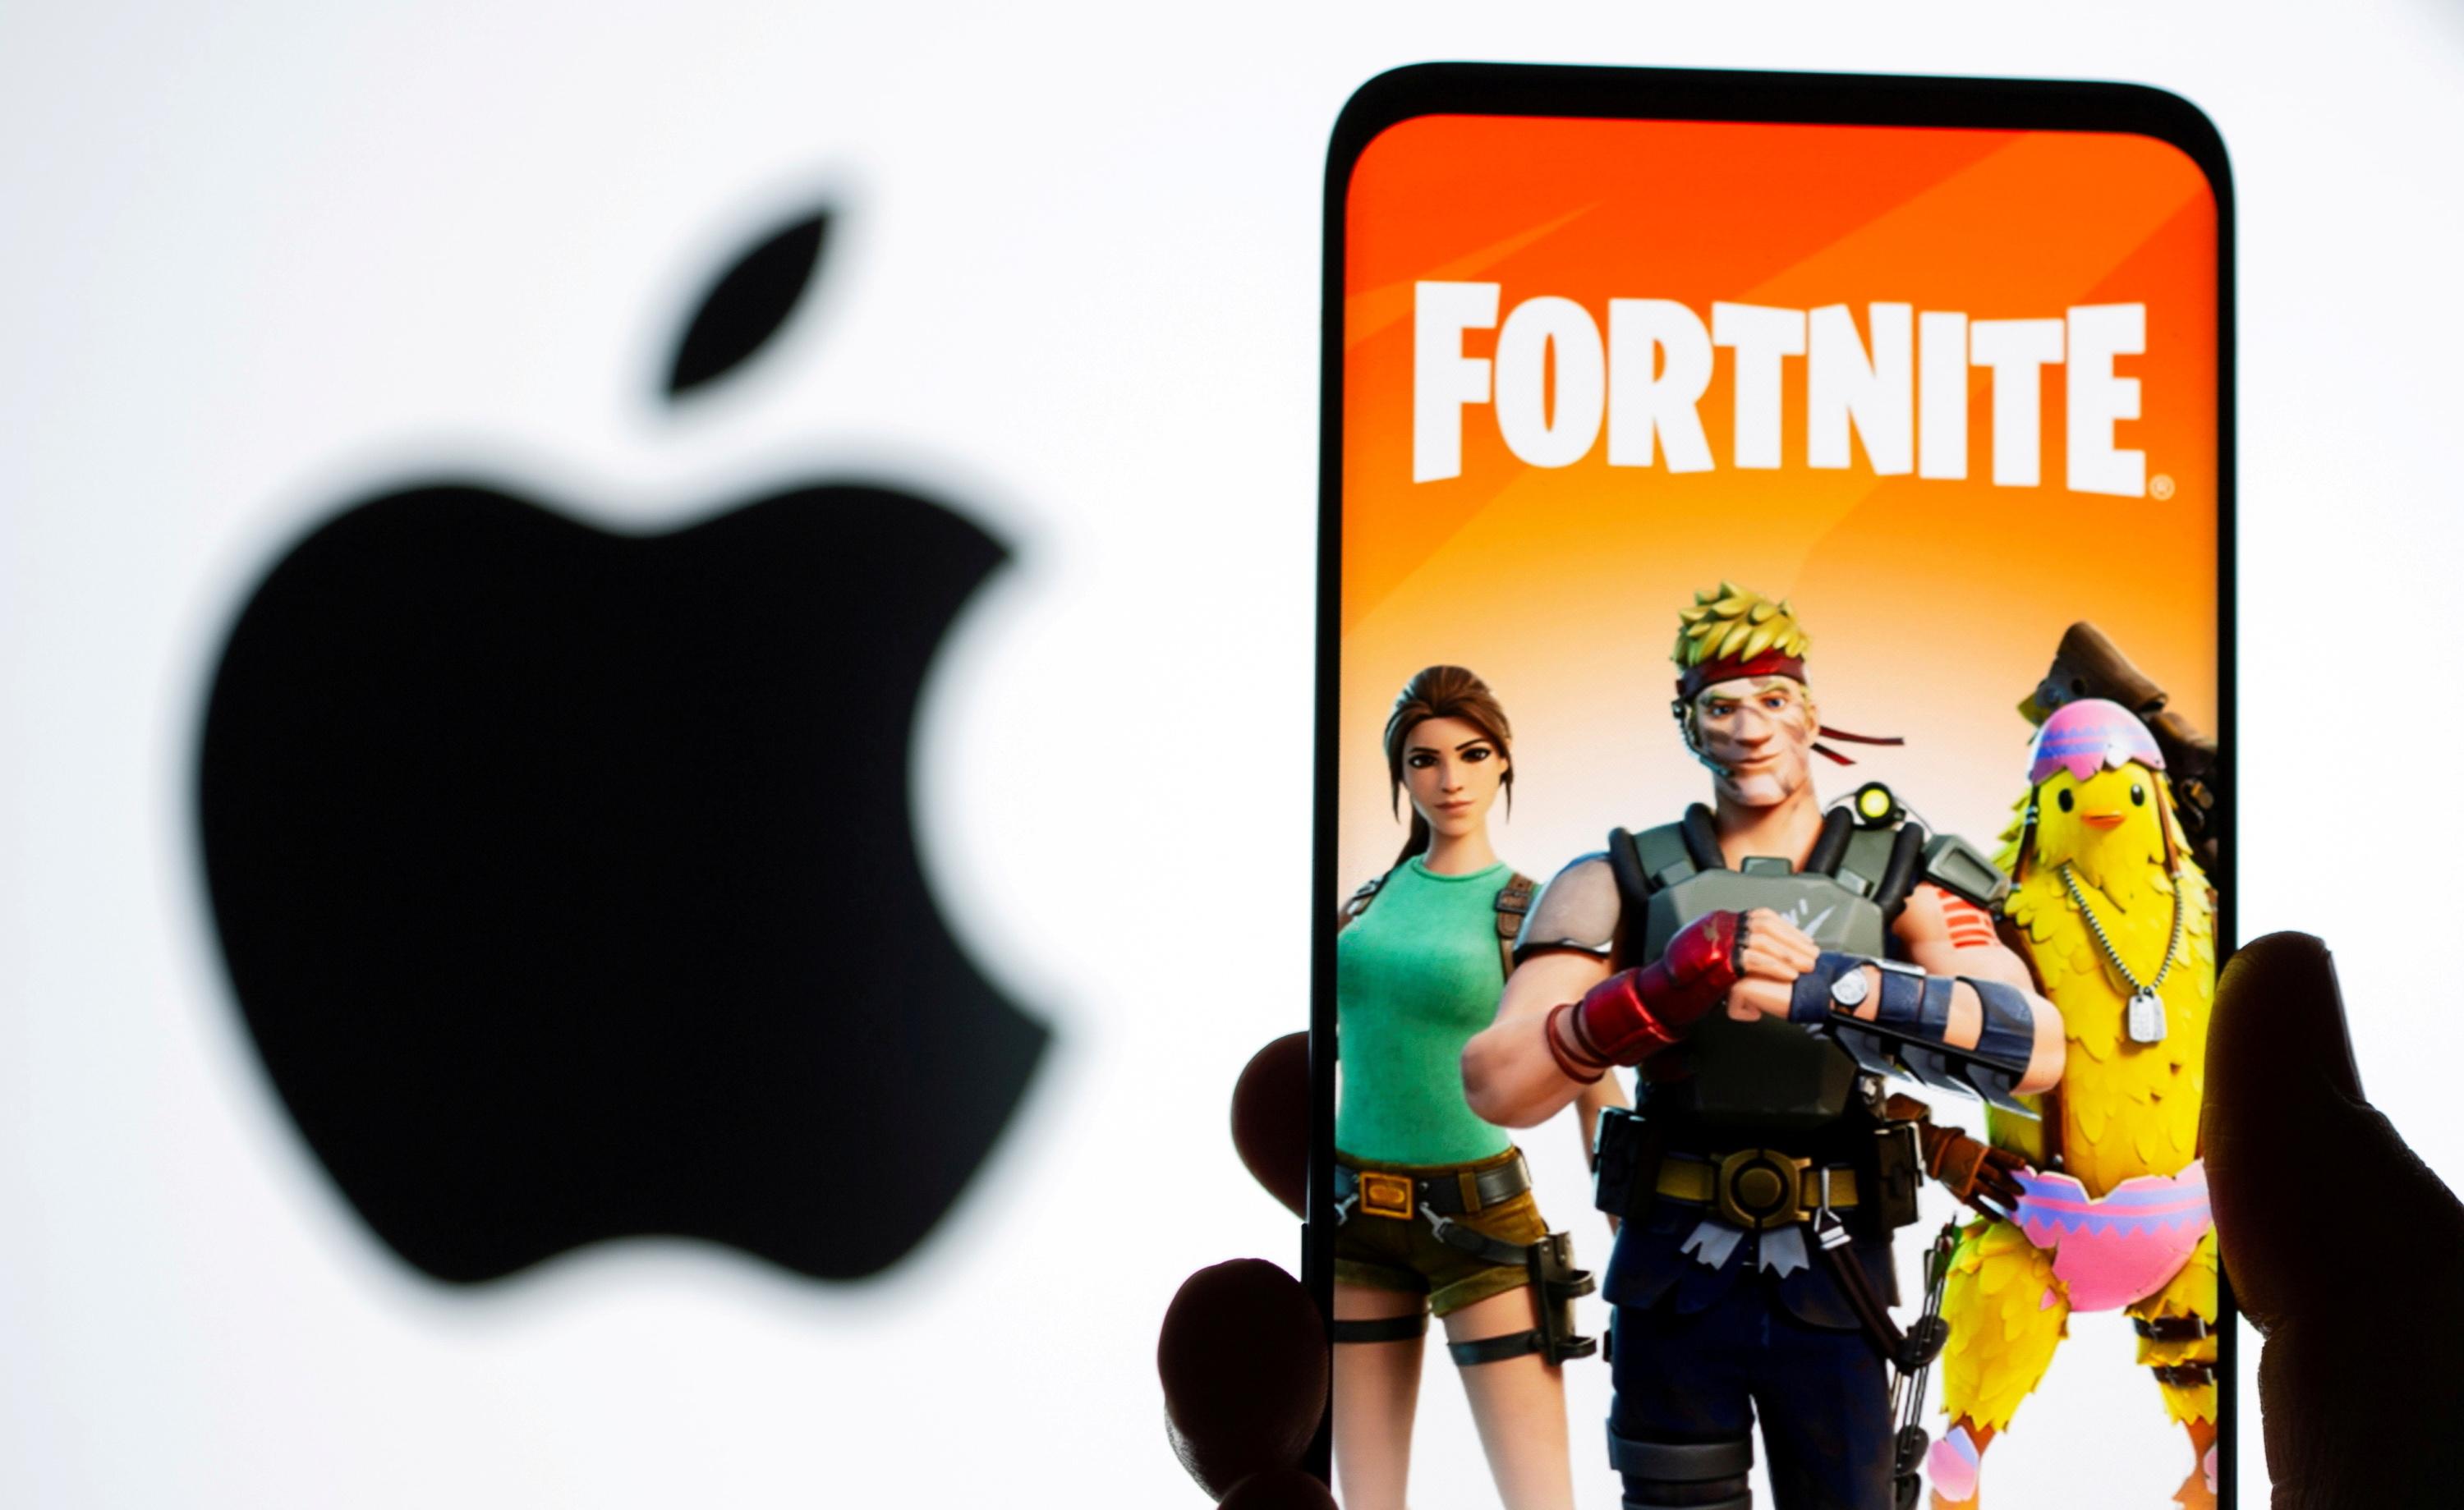 apple n autorisera pas le jeu fortnite a revenir sur les iphone avant la fin de sa bataille judiciaire avec epic games